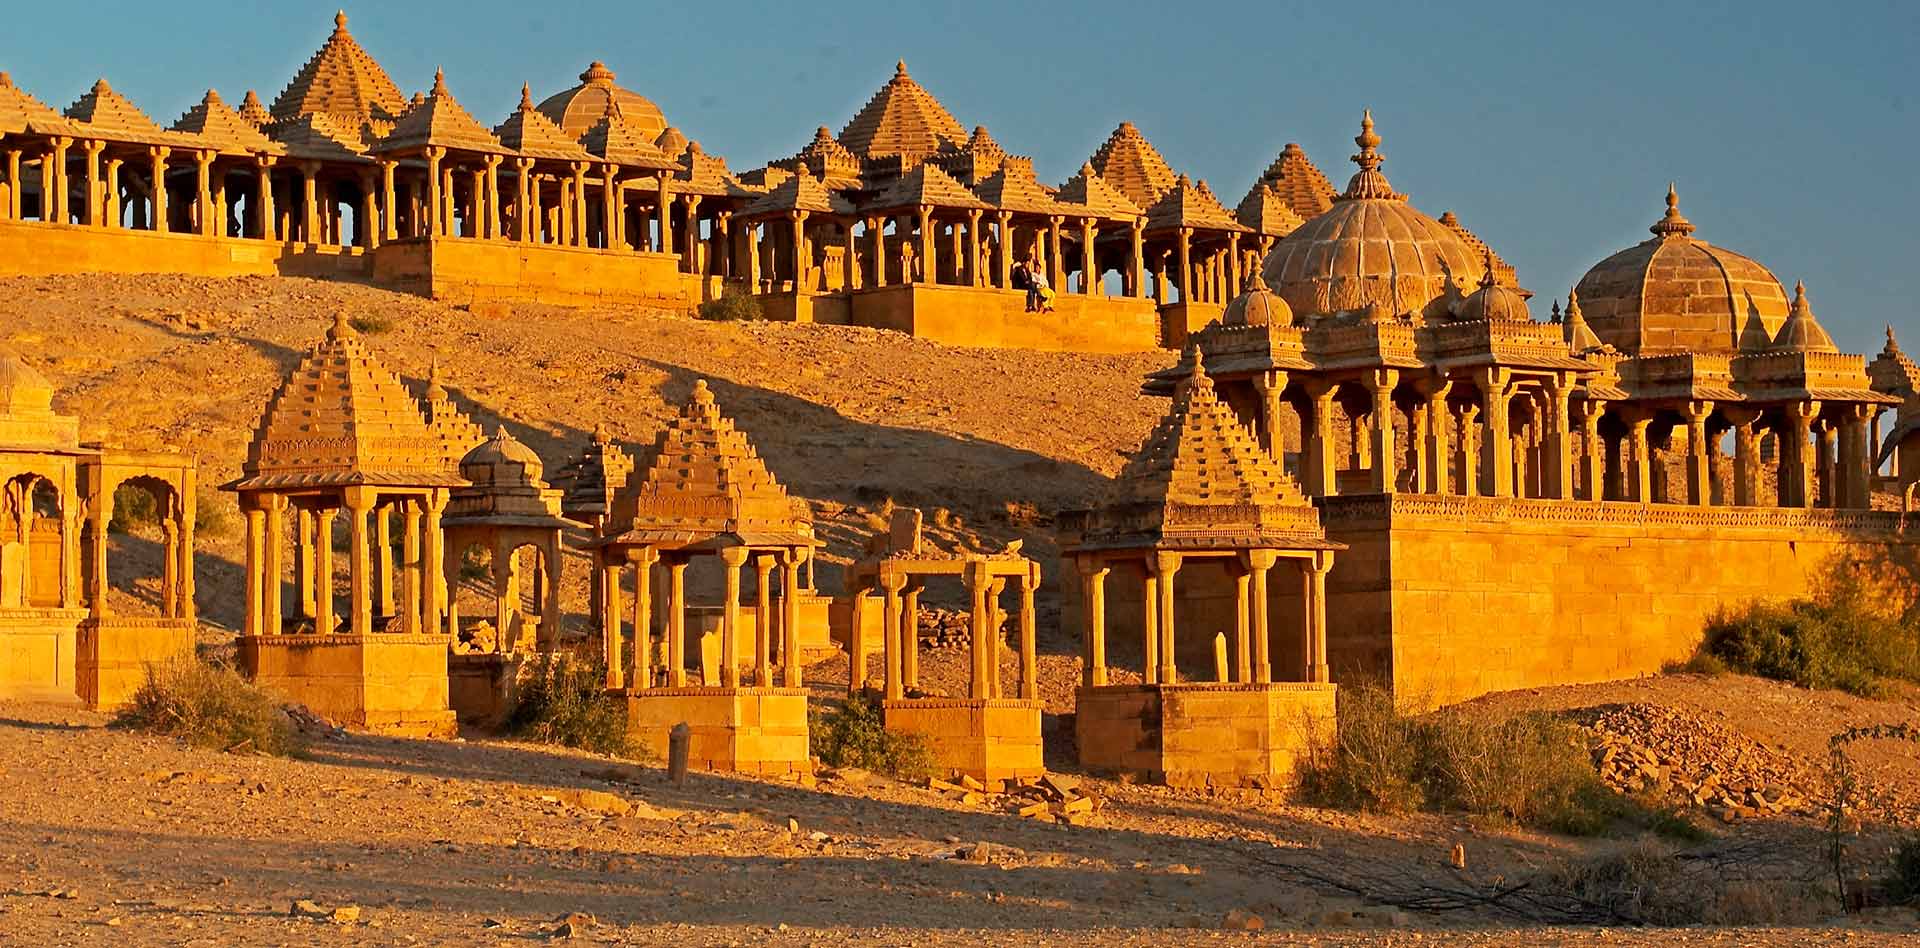 Day 07 : Jodhpur - Jaisalmer